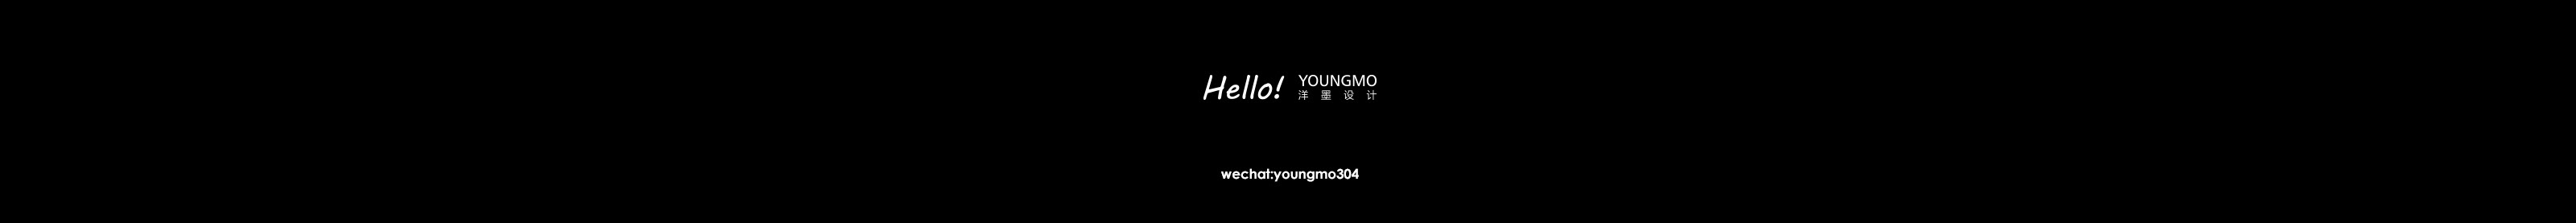 Banner del profilo di young mo